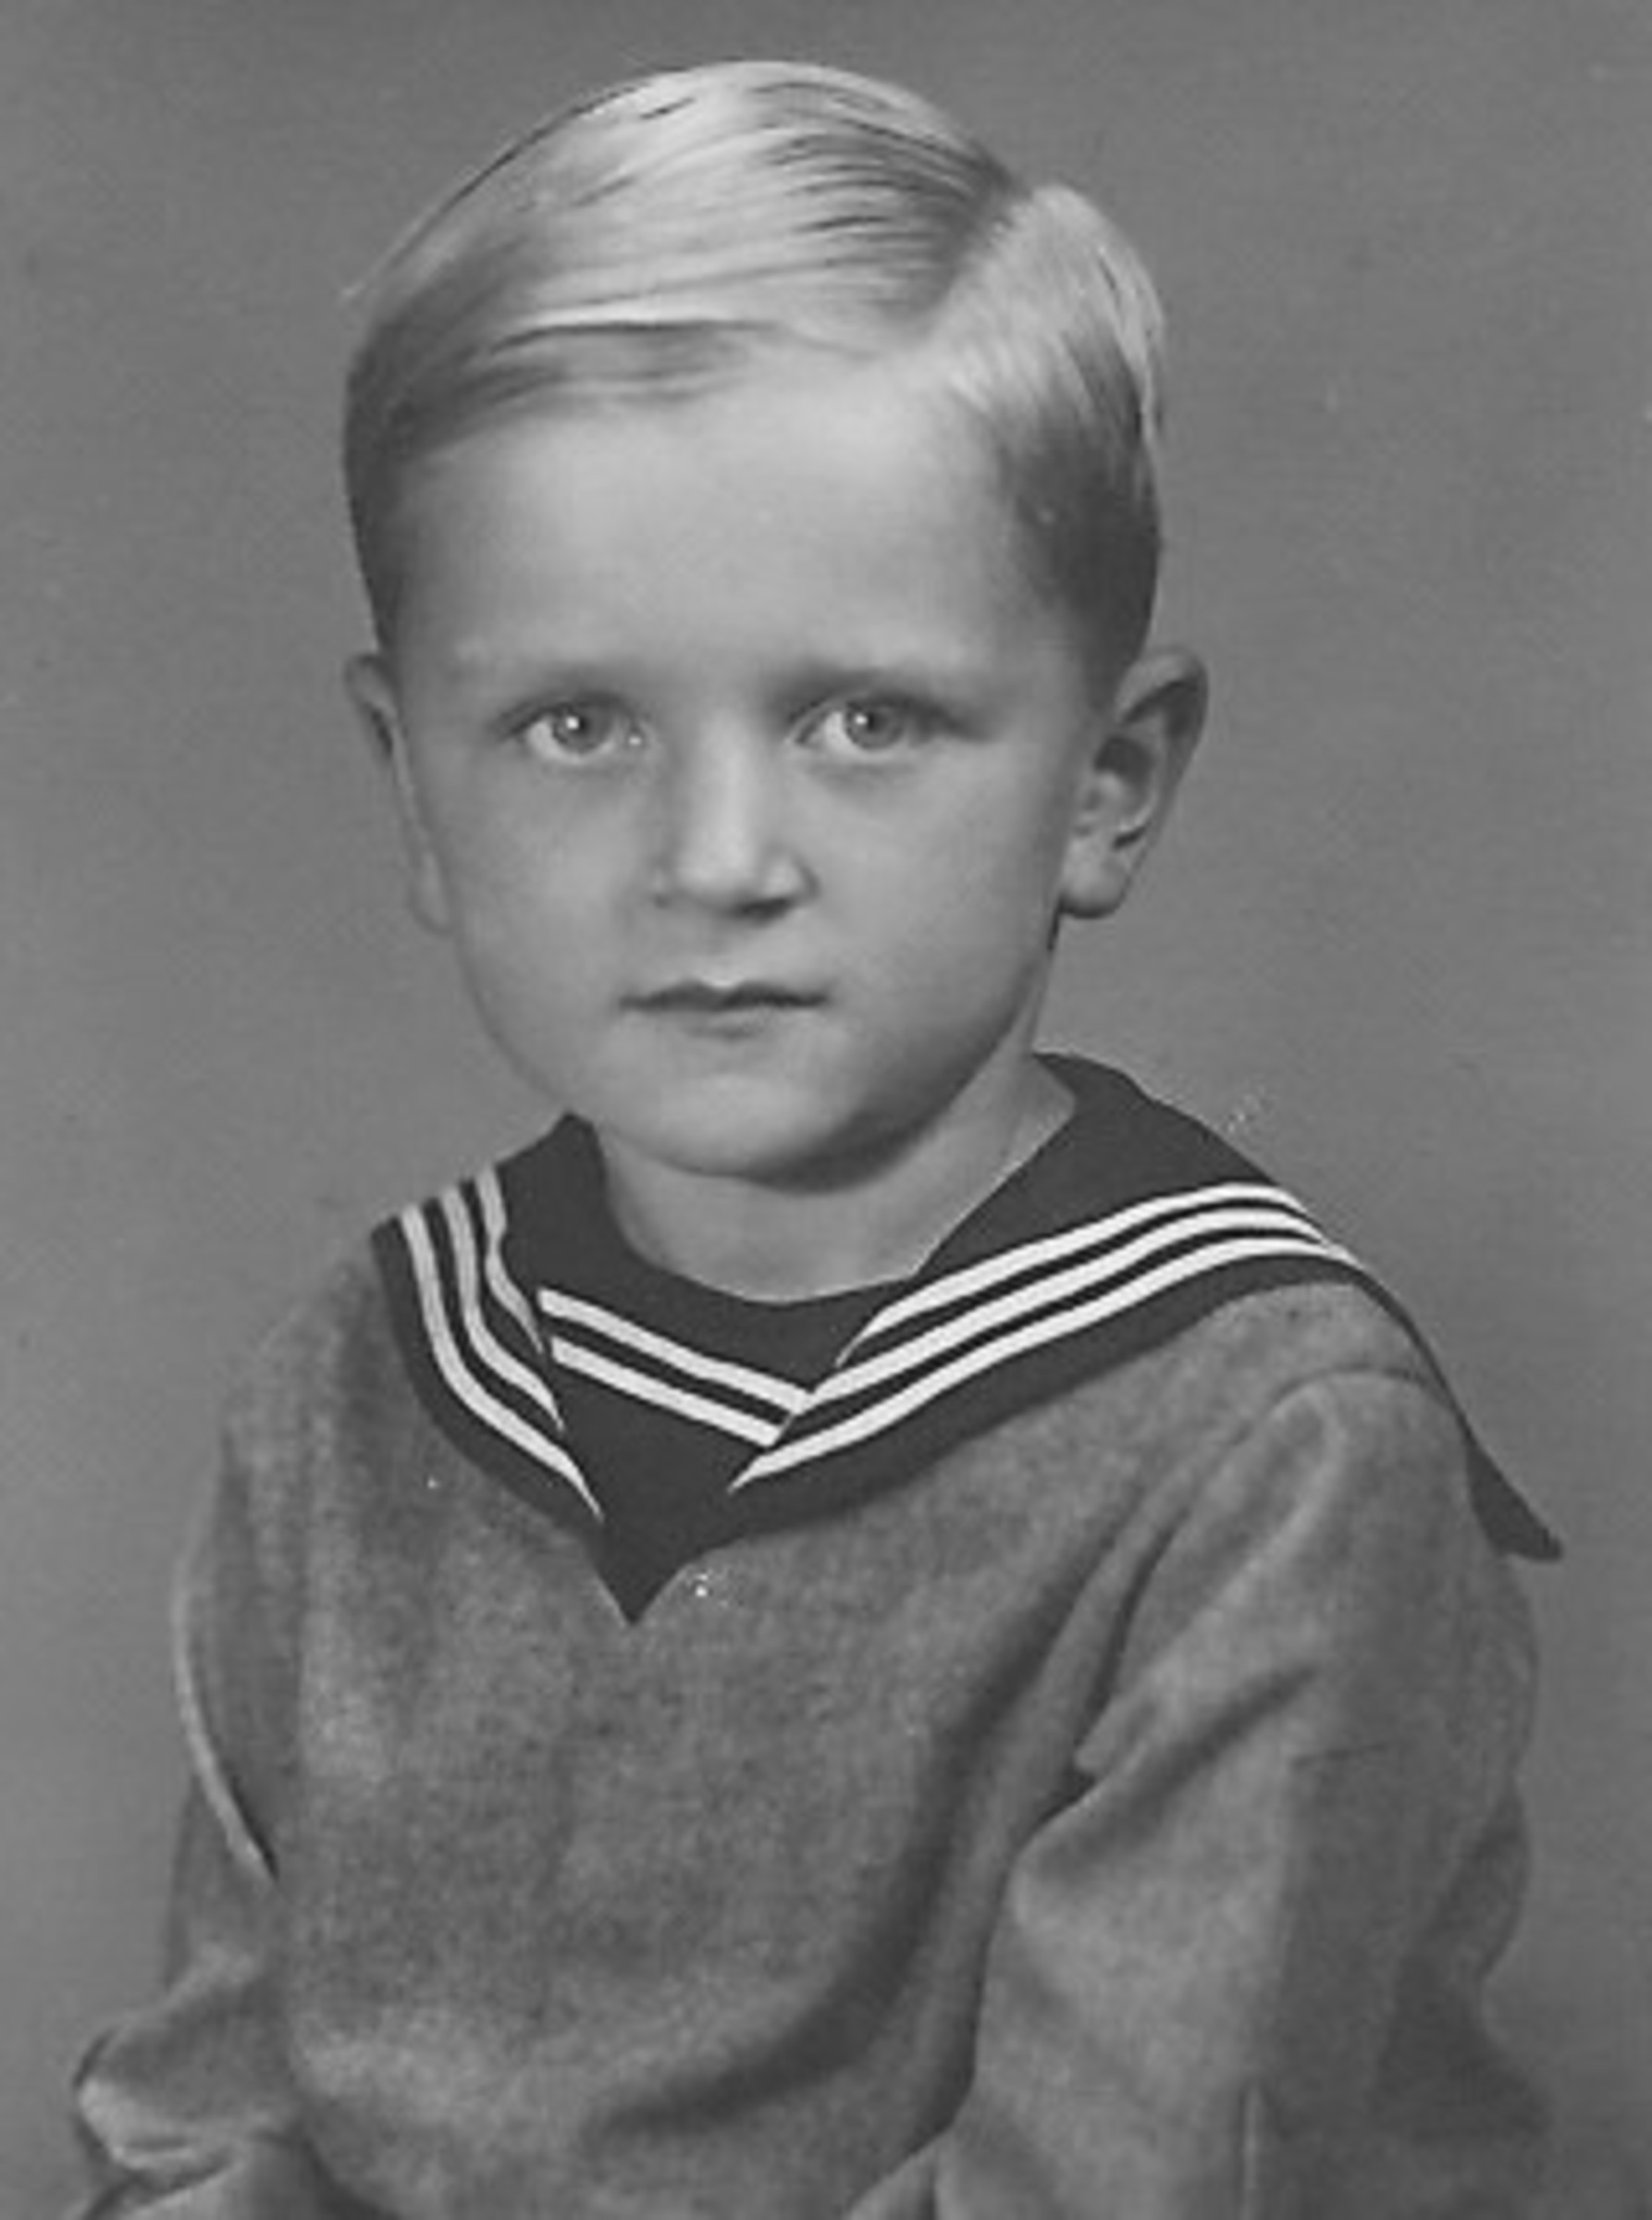 Jiří Tichota as a young boy 